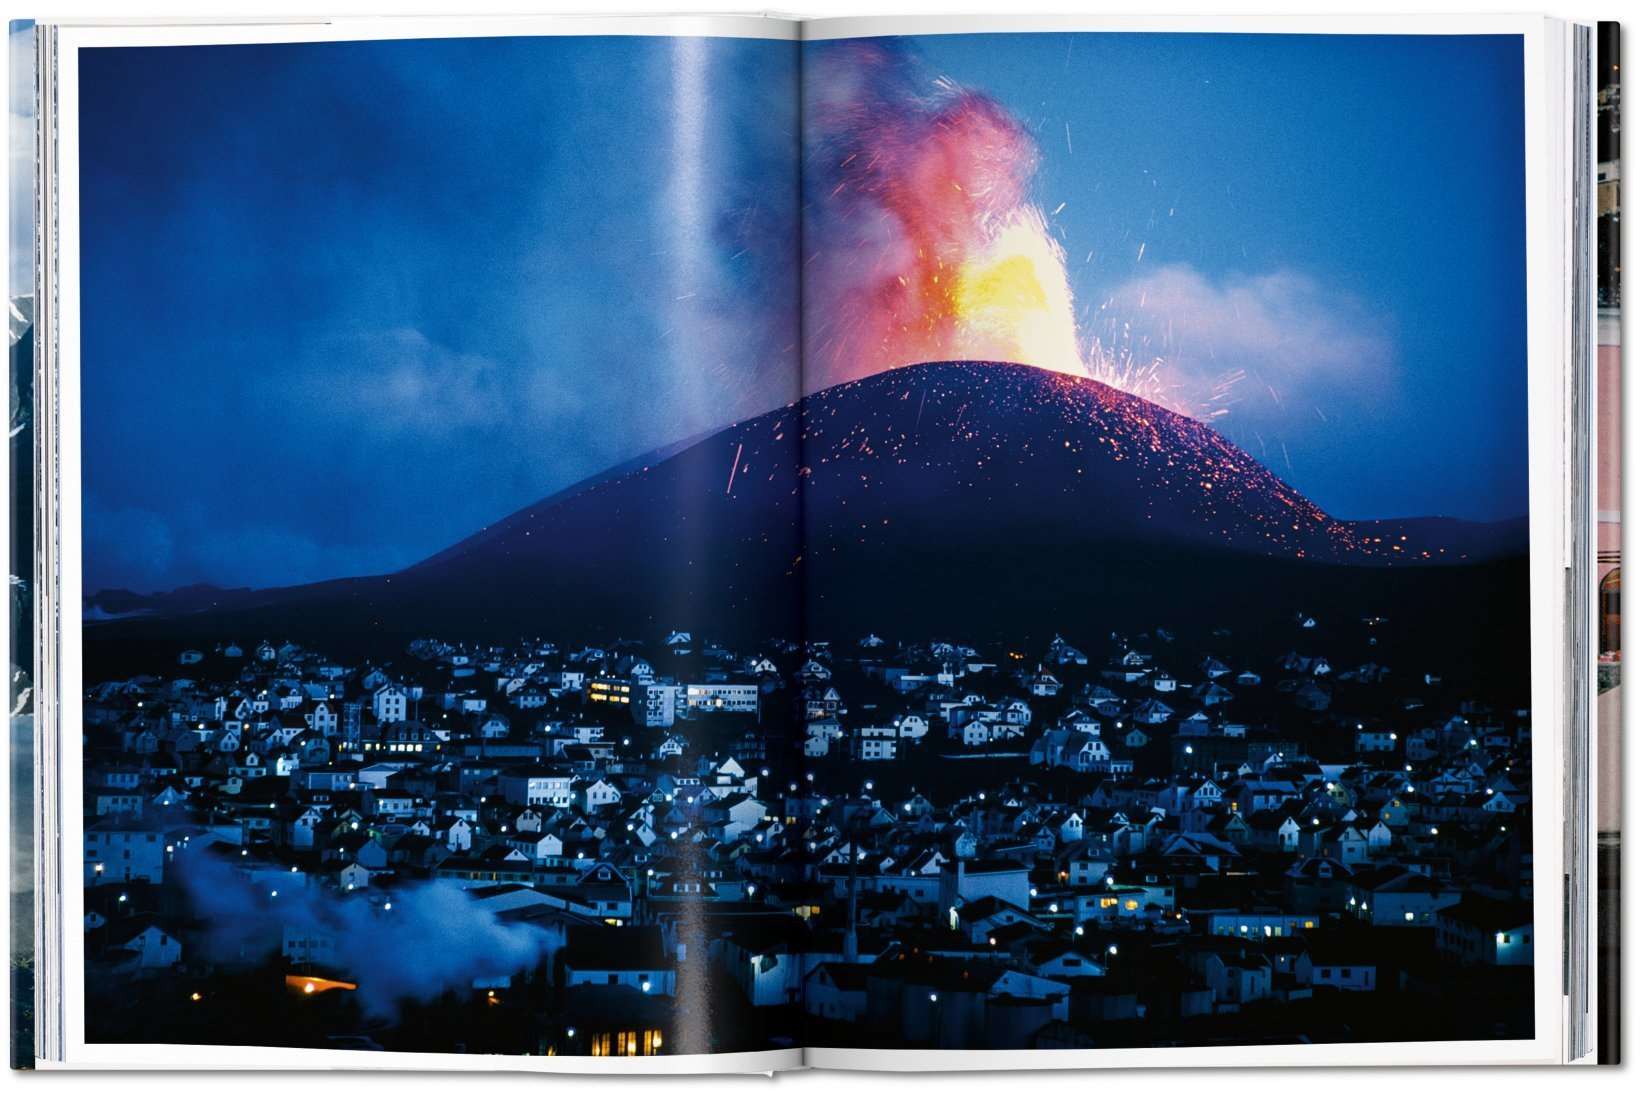 Libro National Geographic. La vuelta al mundo en 125 años. Europa DEIMOTIV